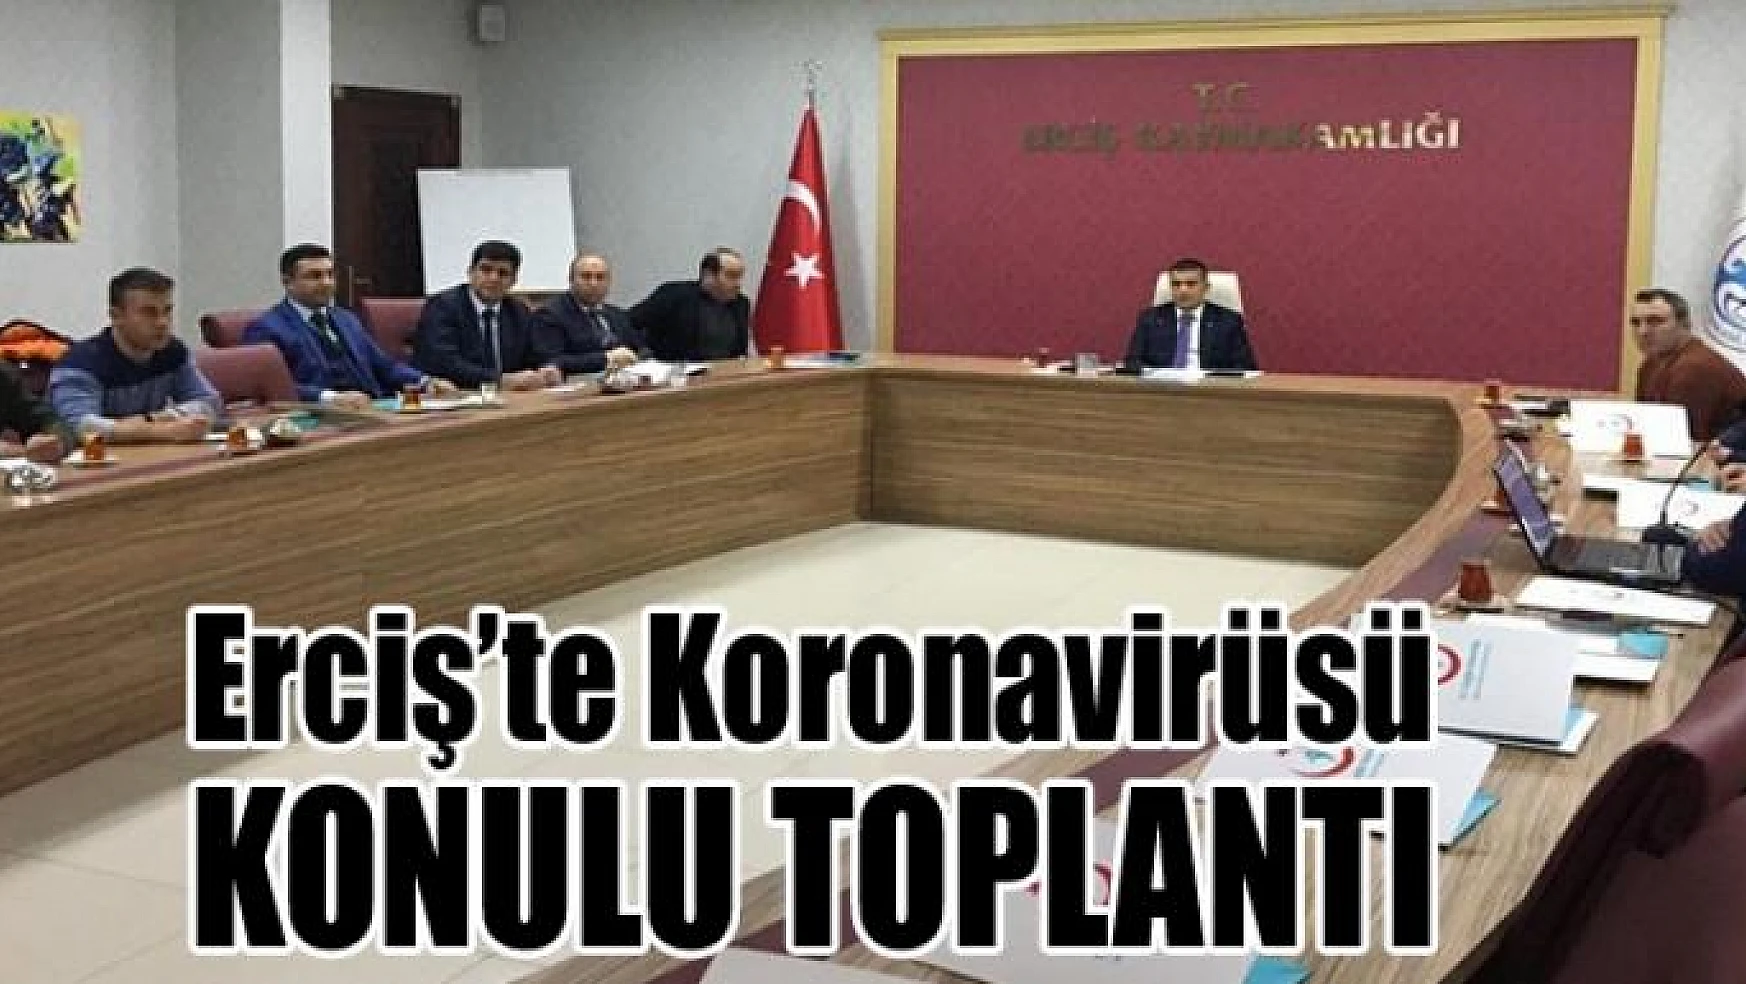 Erciş'te Koronavirüsü konulu toplantı